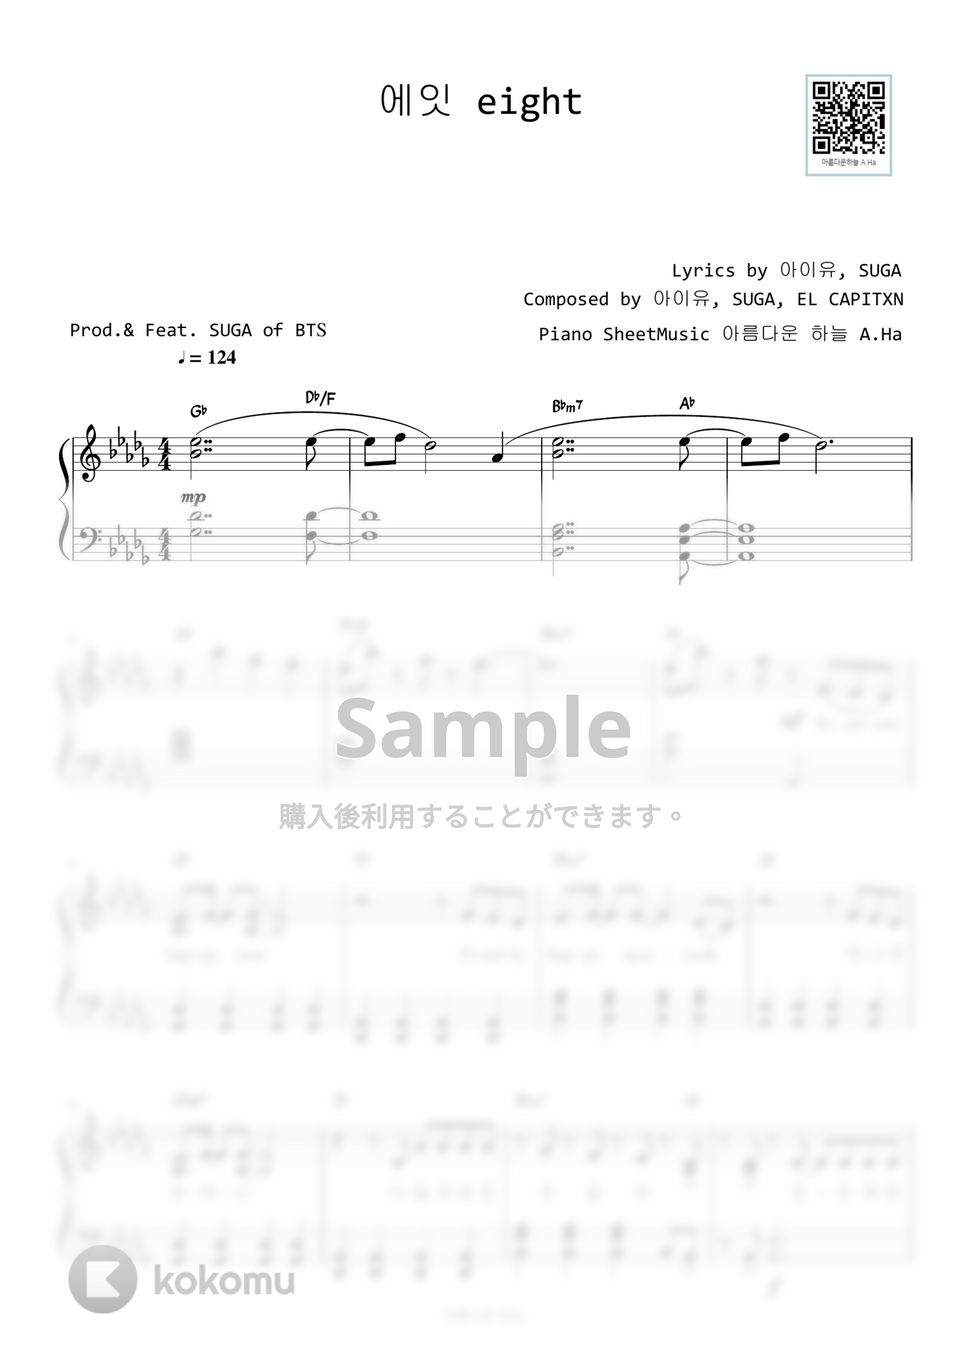 IU - eight(Prod. & Feat. SUGA OF BTS) (Db Key) by A.Ha